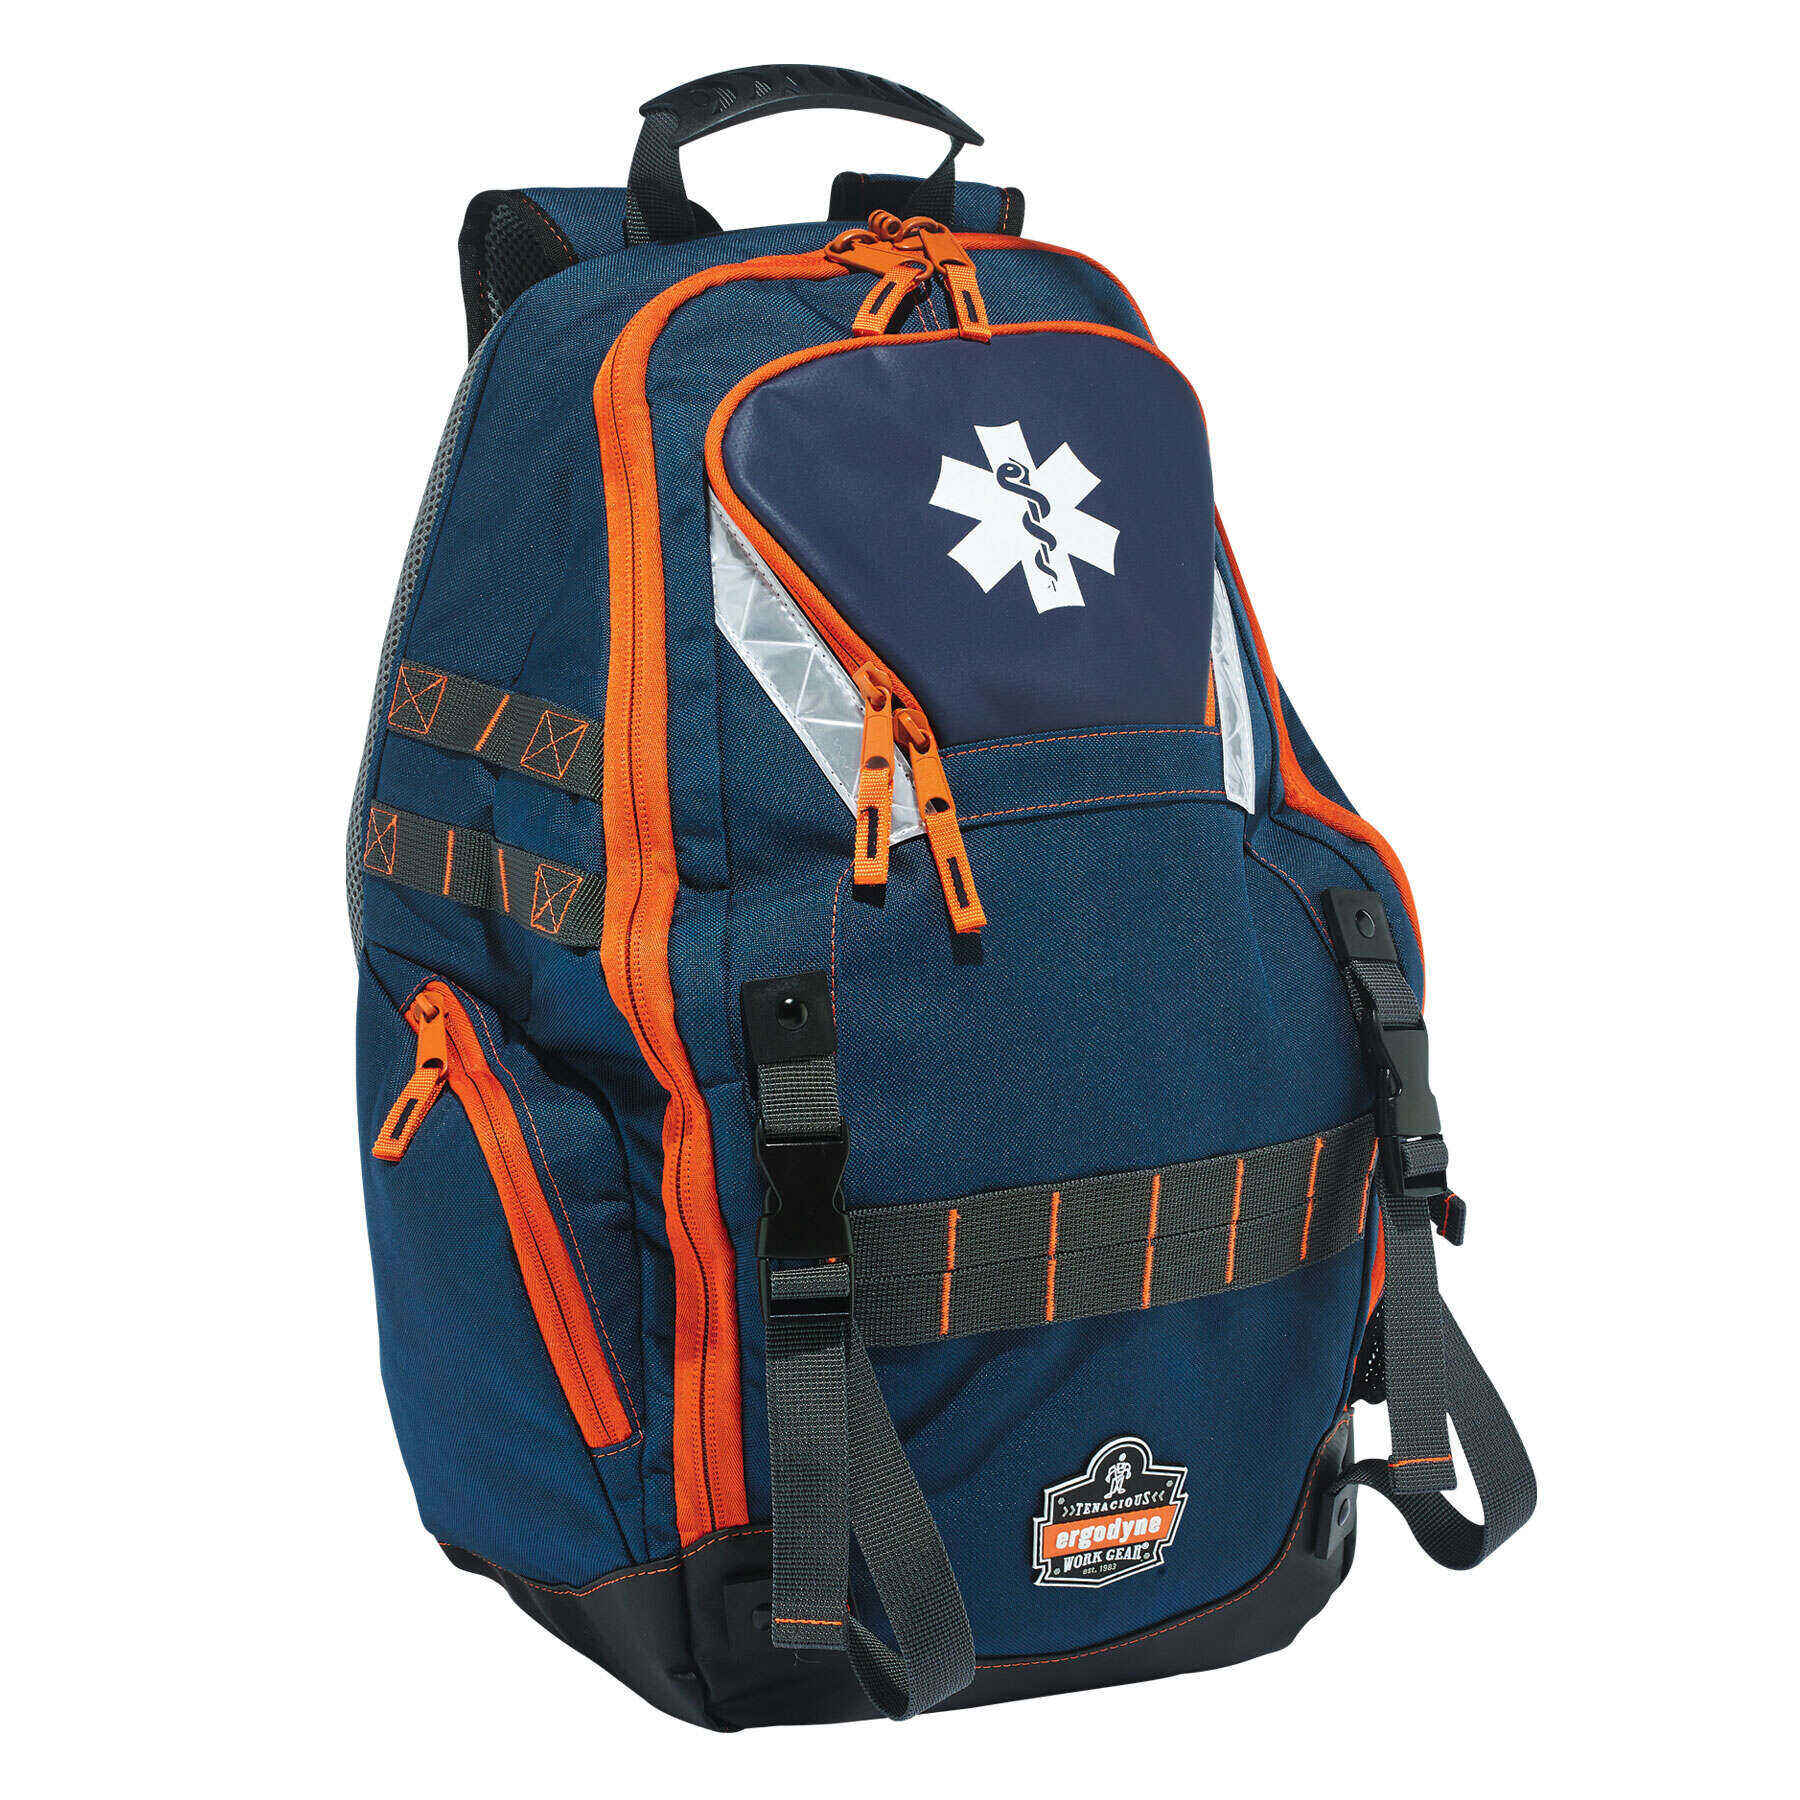 Ergodyne Arsenal® 5244 Responder Backpack, Blue - image 1 of 5